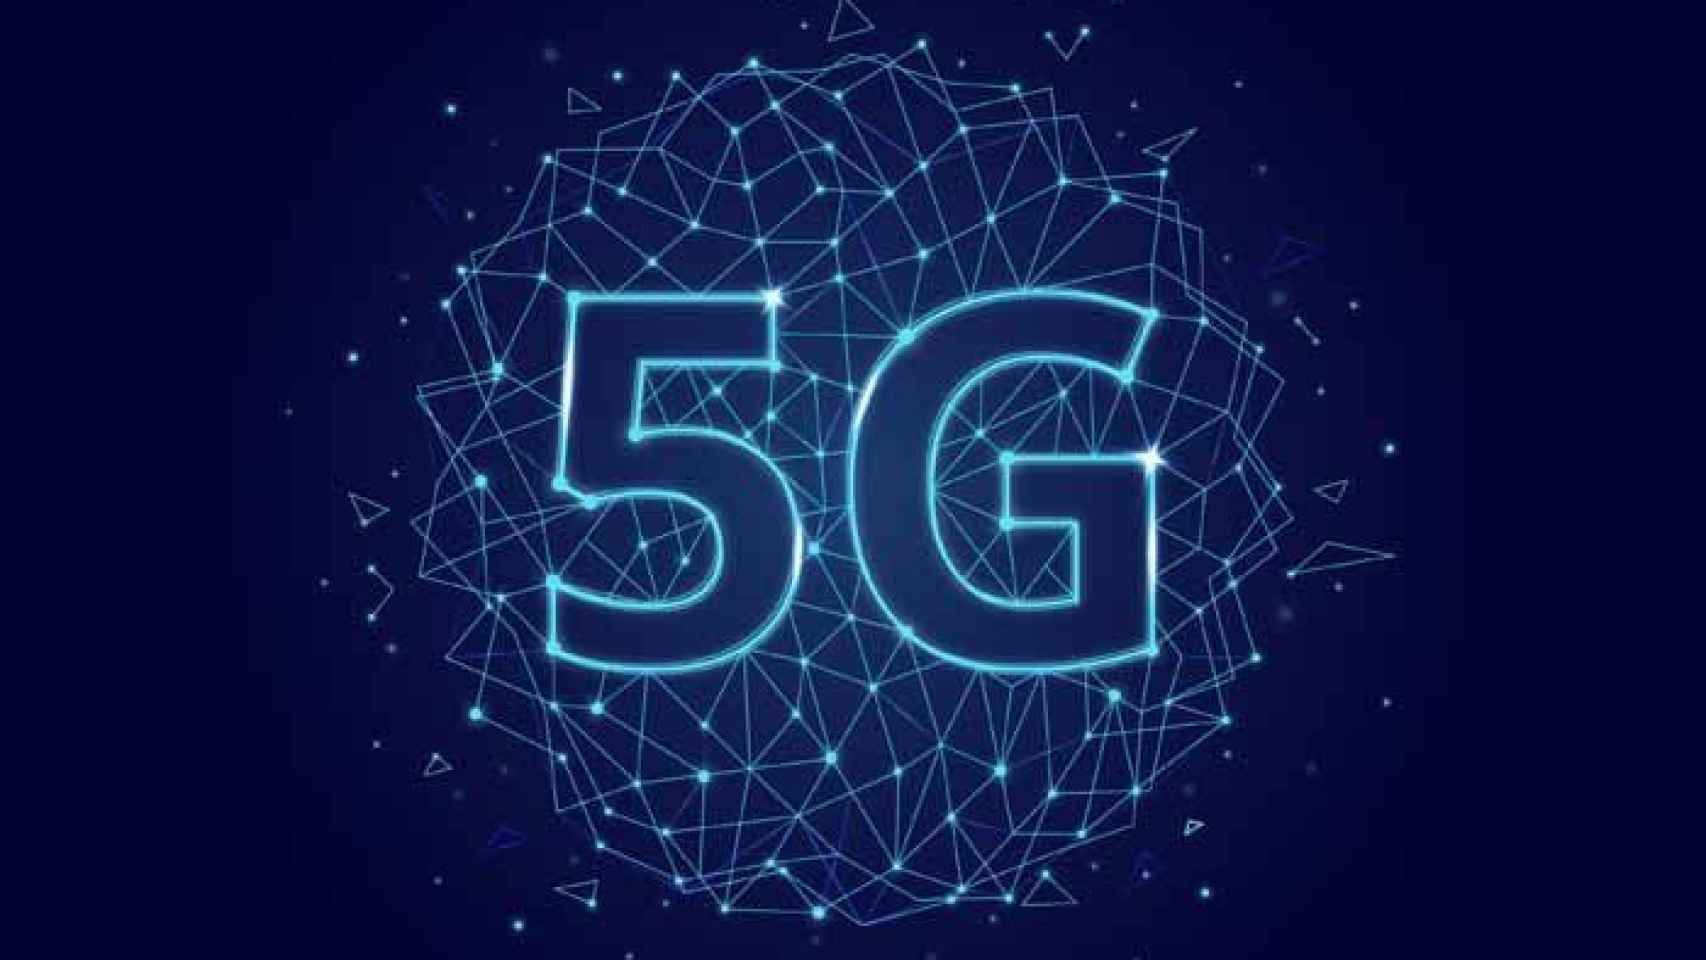 El 5G, las redes de fibra y las tecnologías ‘cloud’ como clave en la modernización del sector Telco